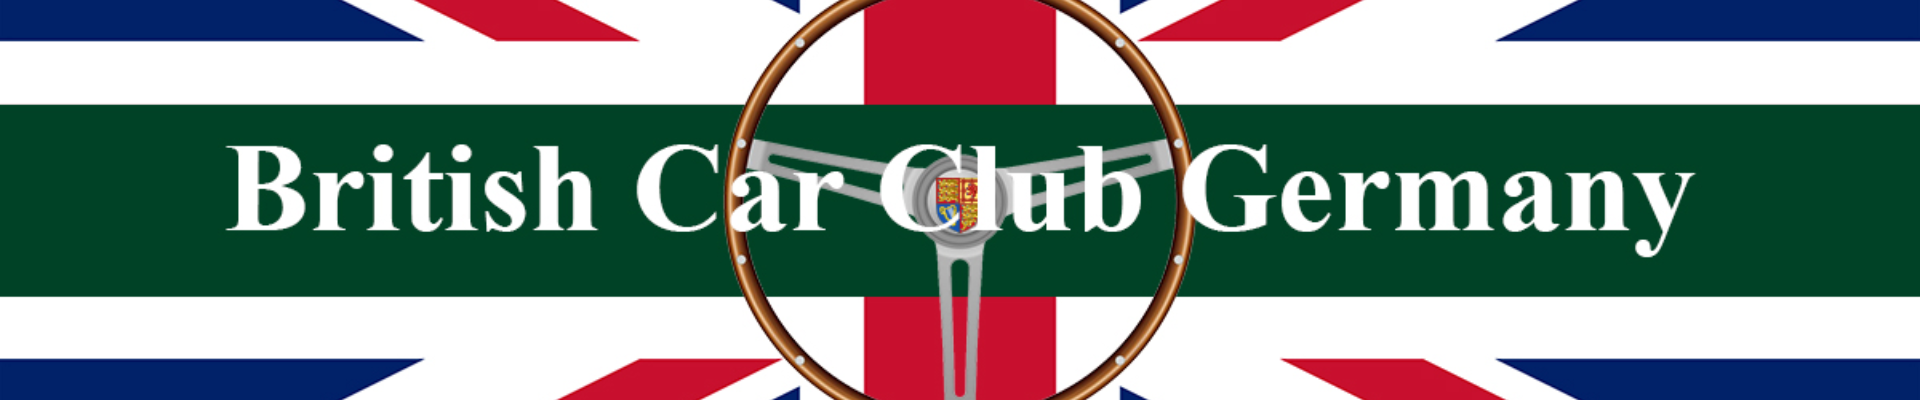 British Car Club Germany